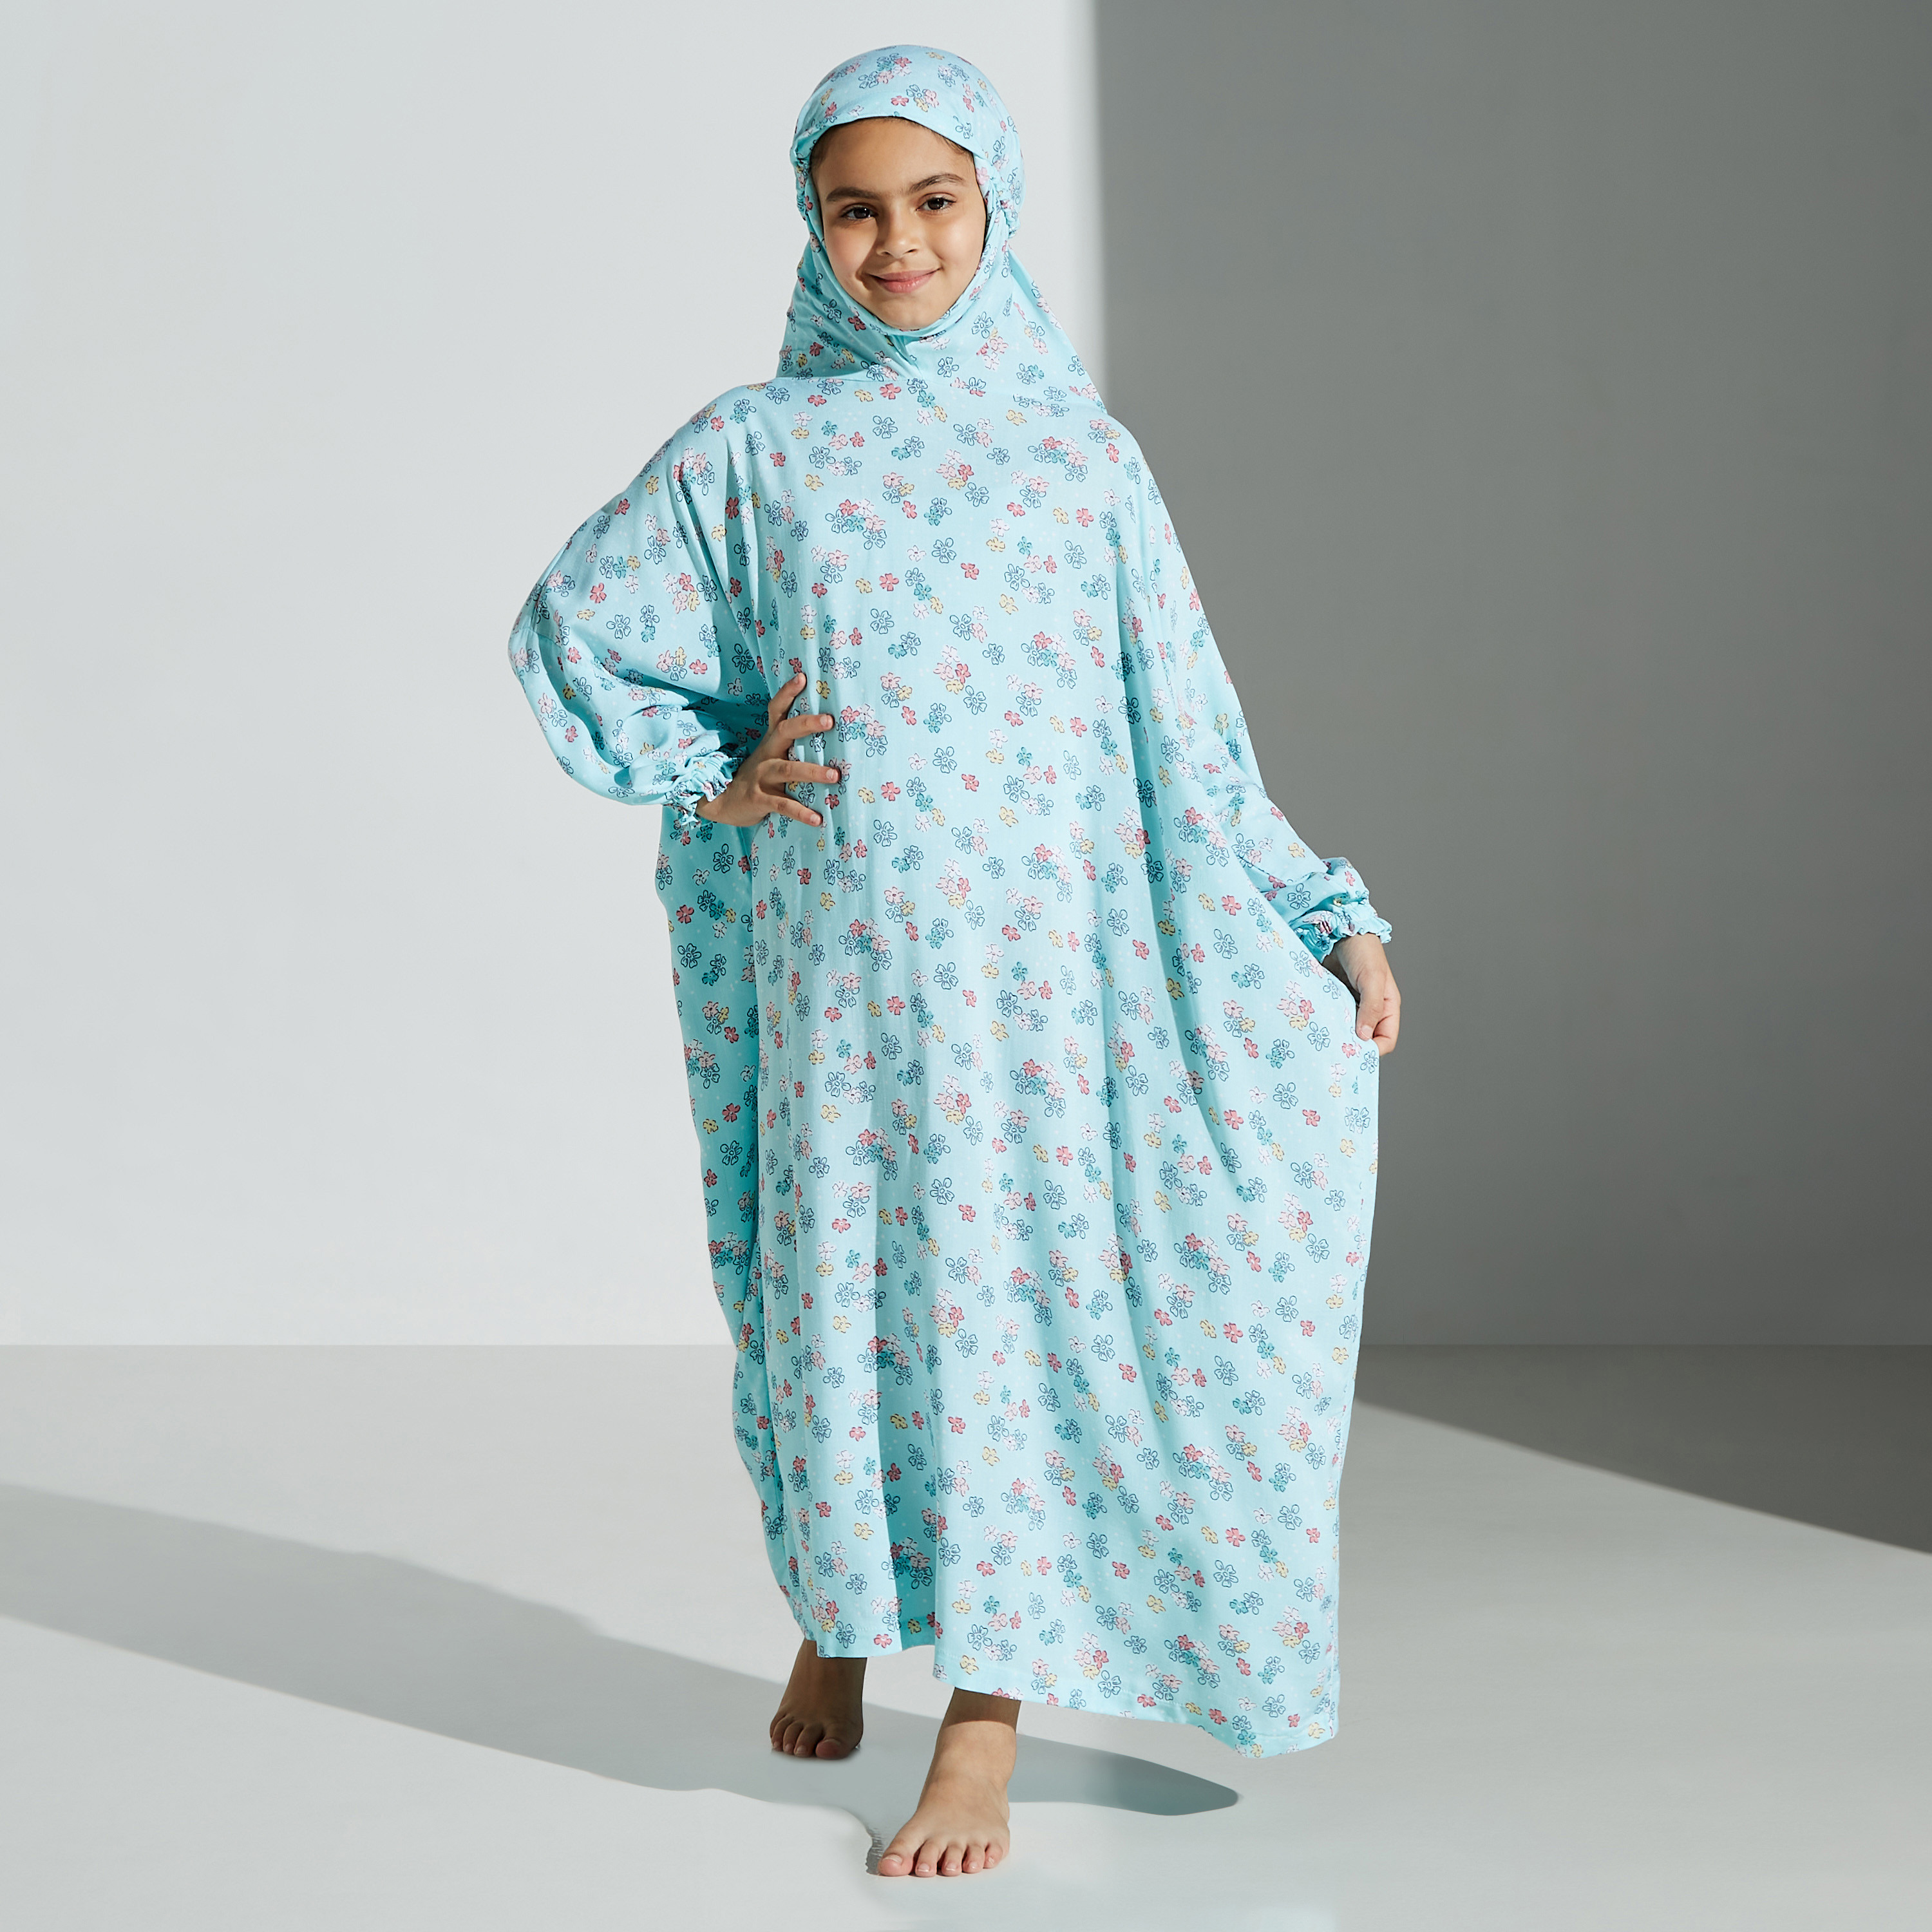 Buy Turquoise Prayer Dress Free Size , Muslim Namaz Abaya With Hijab Online  in India - Etsy